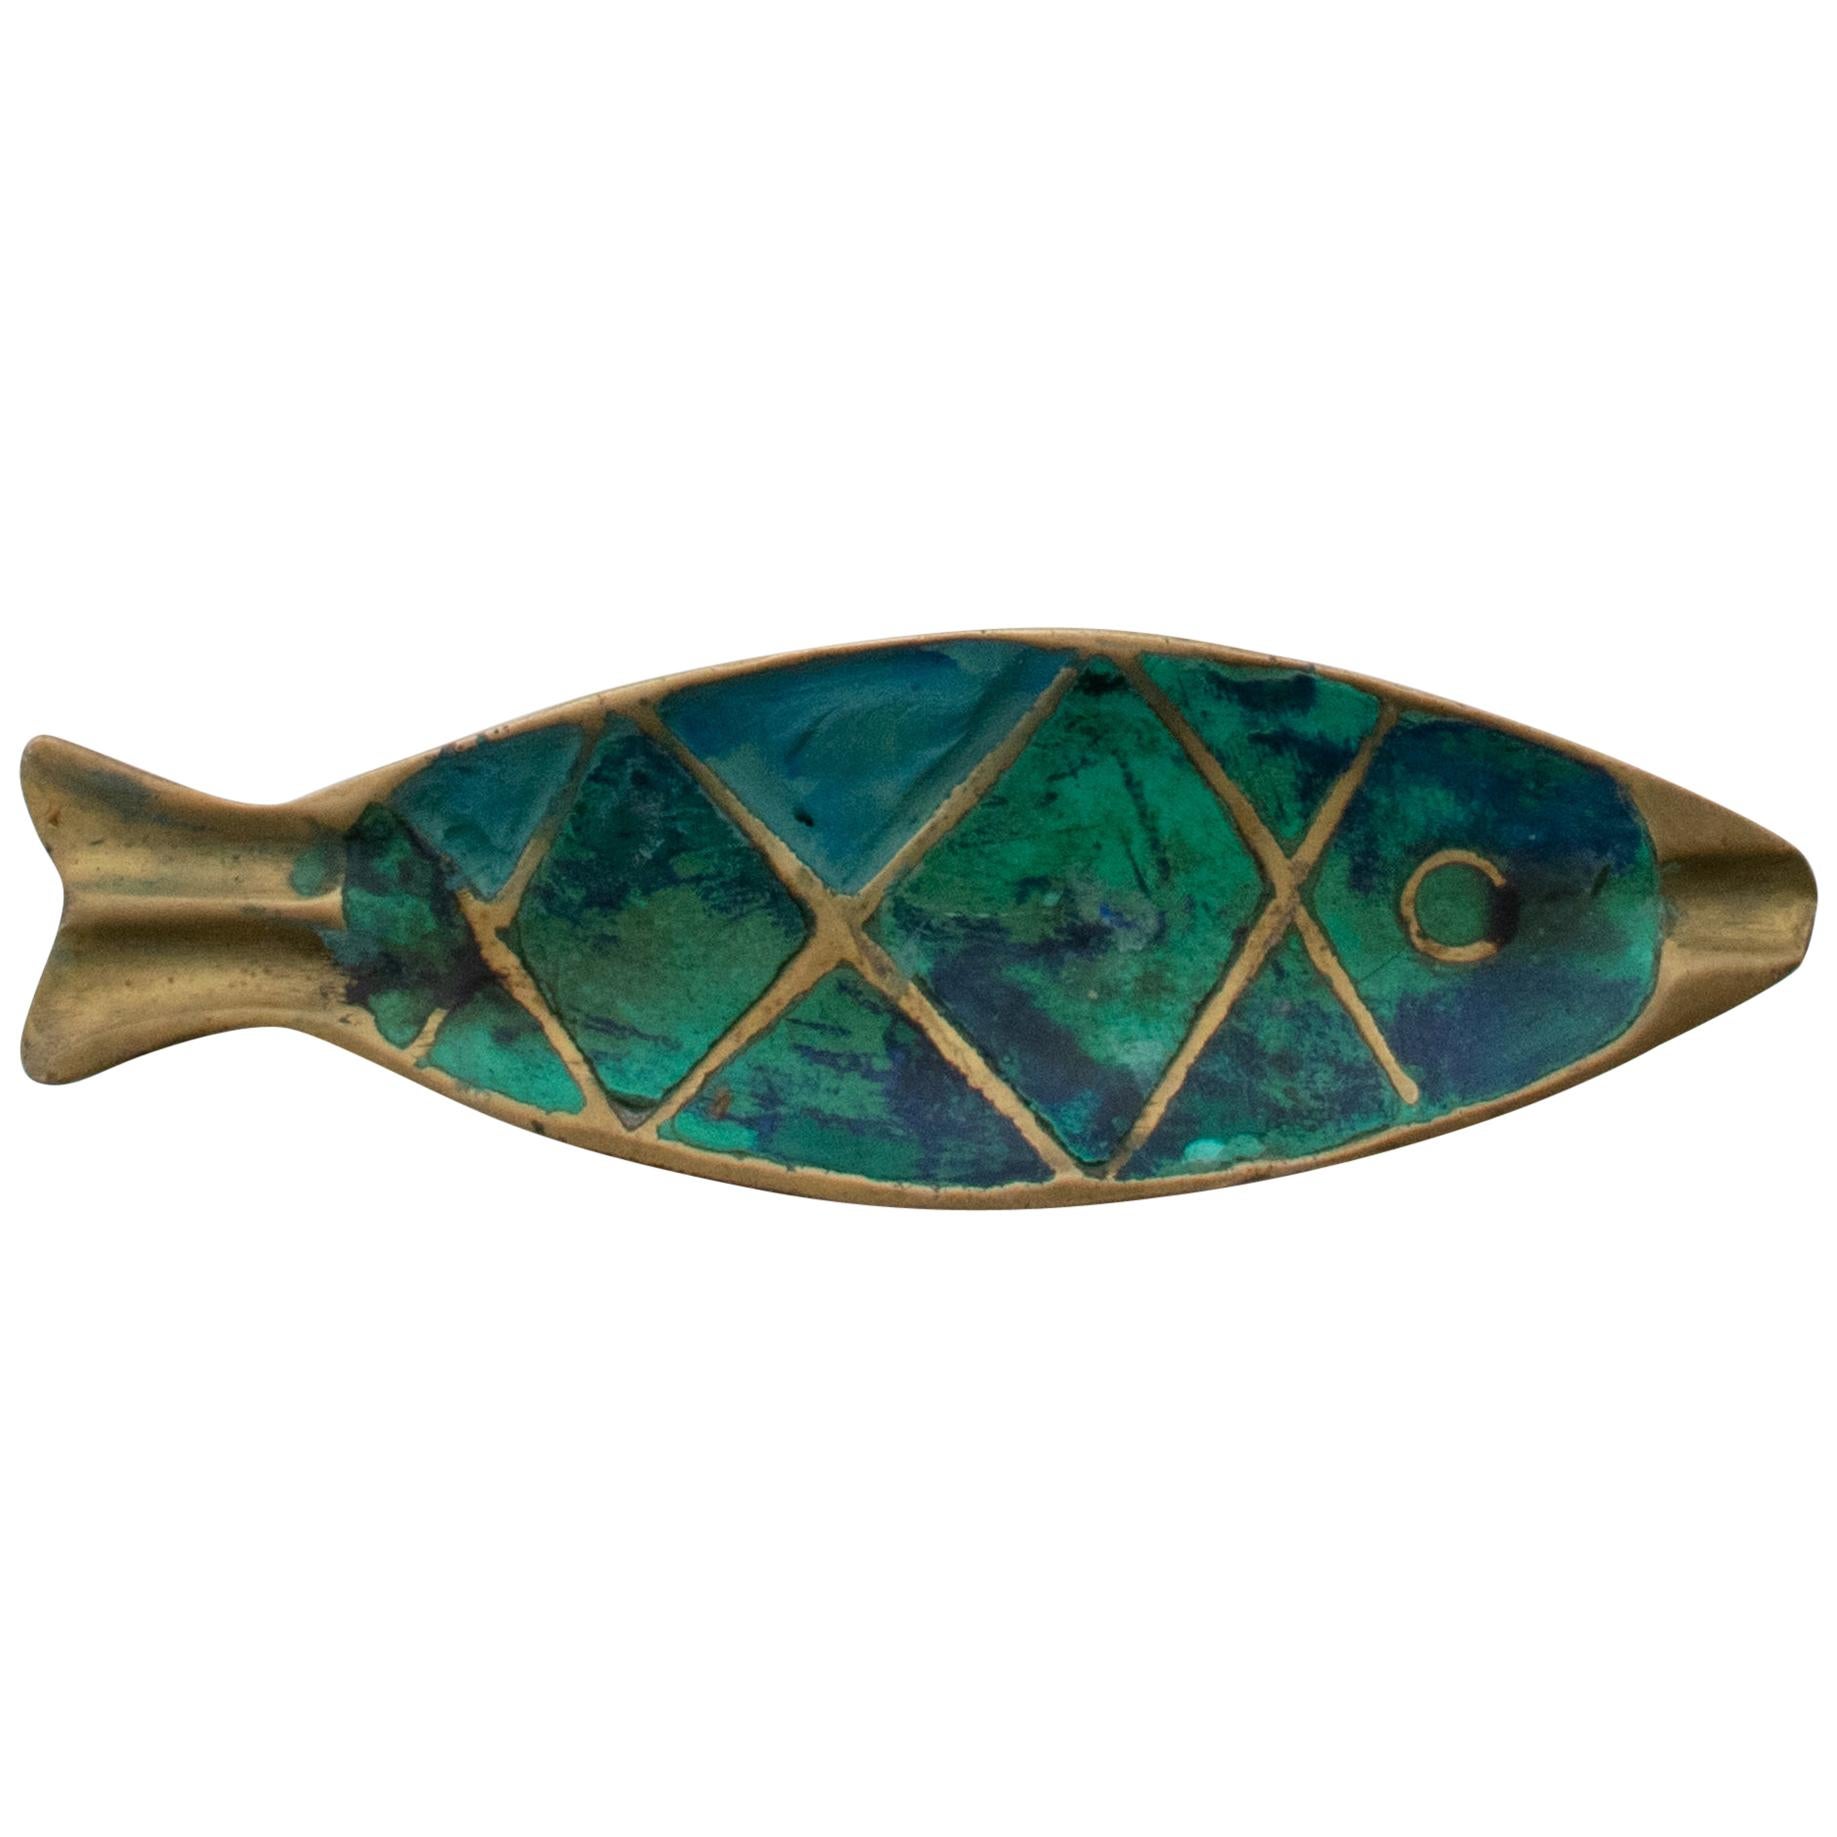 1958 Pepe Mendoza Fish Ashtray in Turquoise Malachite & Bronze from Mexico